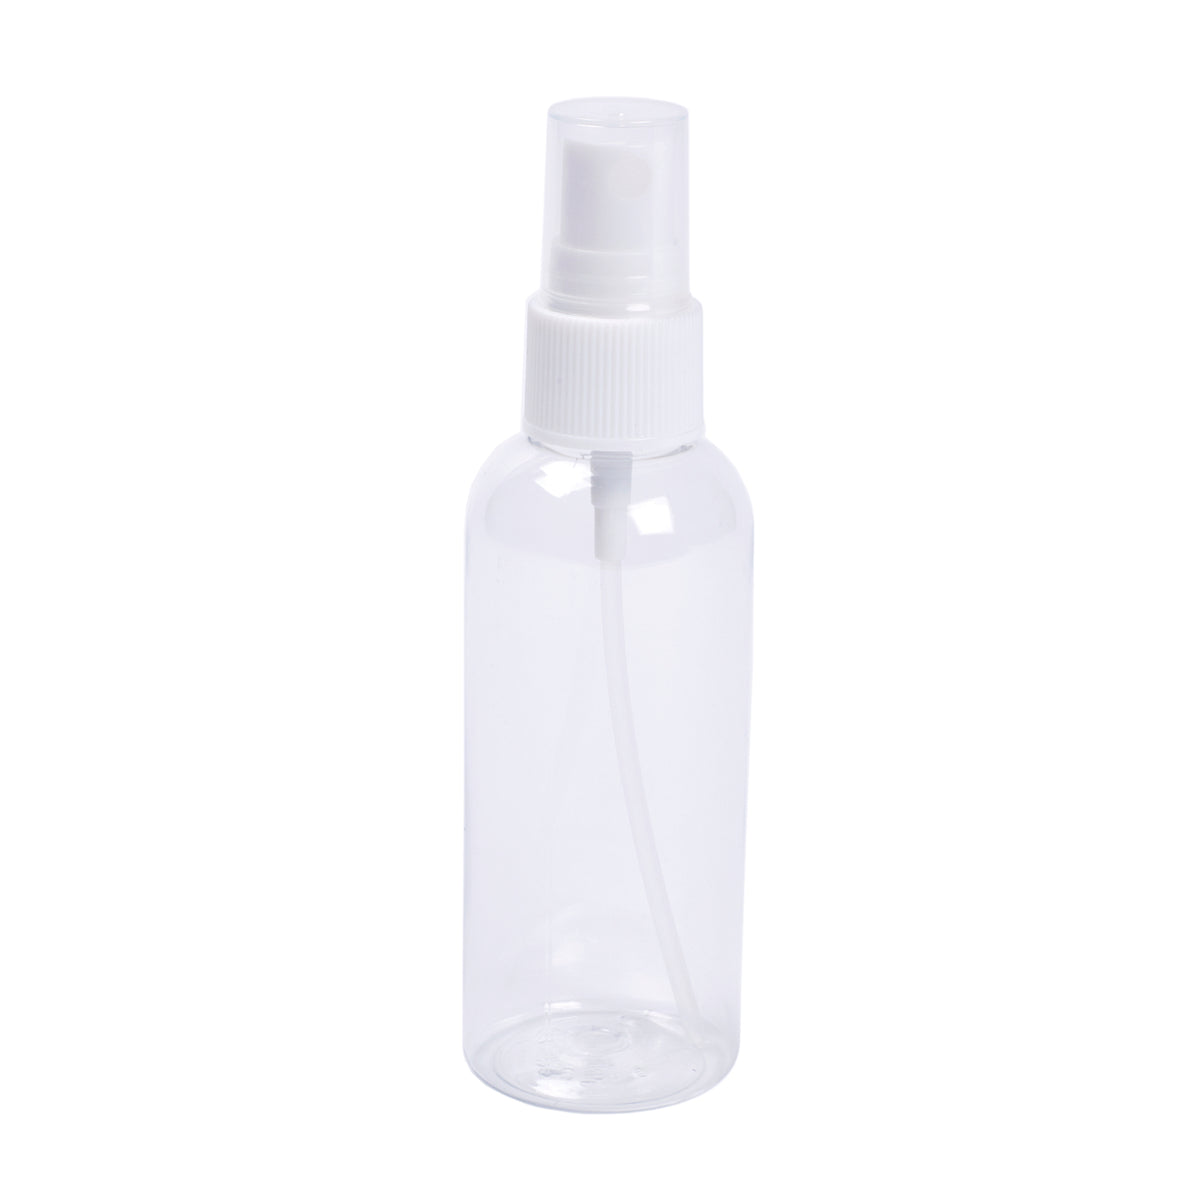 A KirbyAllison.com 3 oz spray bottle on a white background.